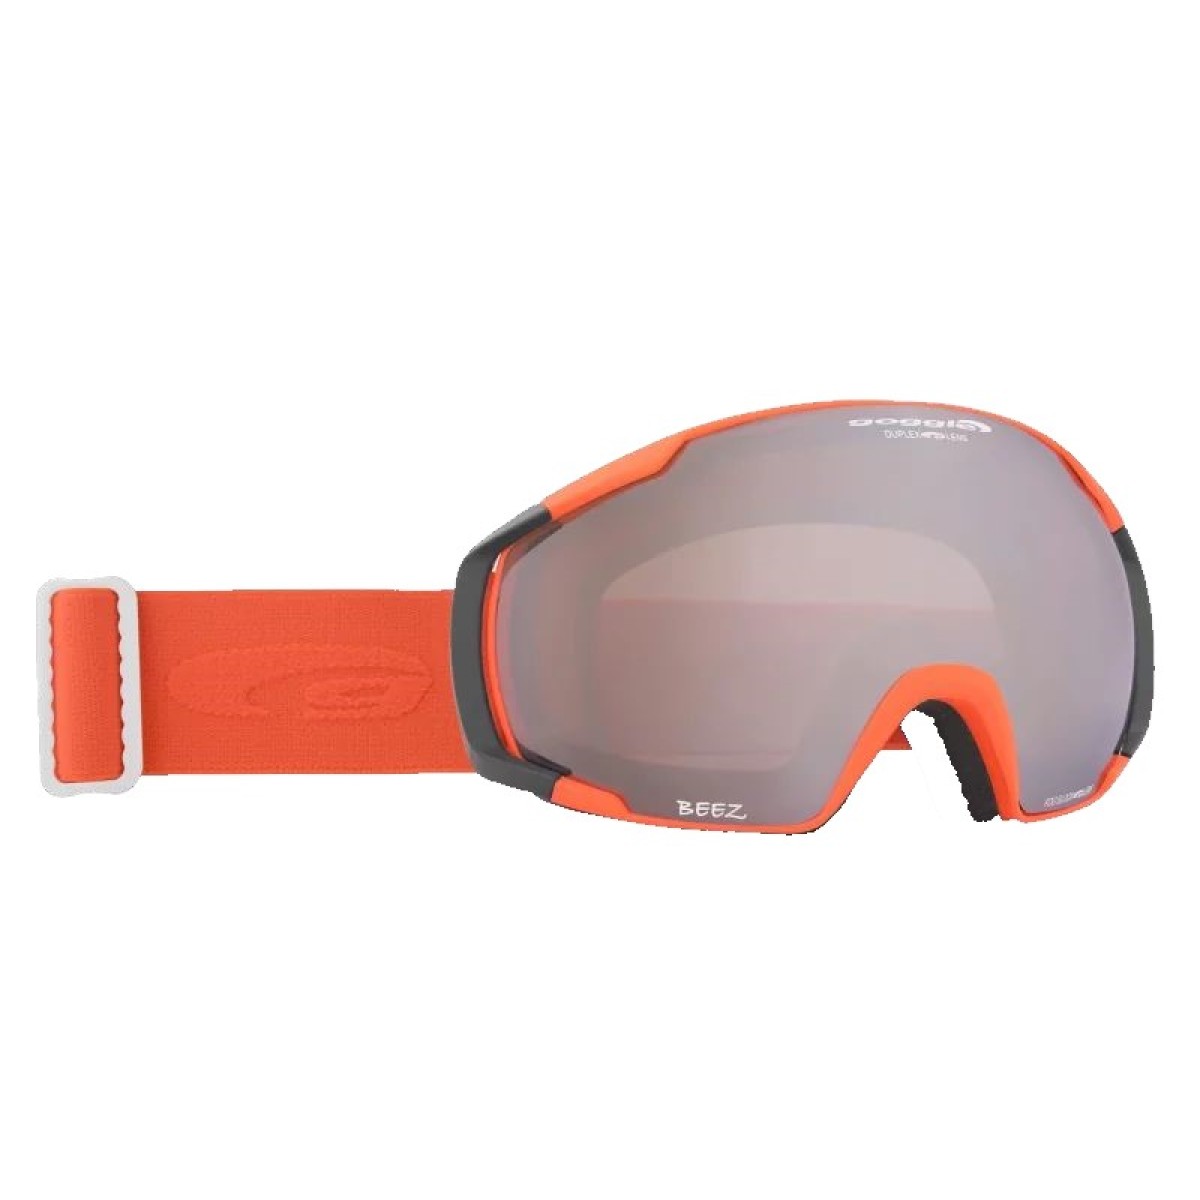 Ski goggles H780-4 GOGGLE - view 1